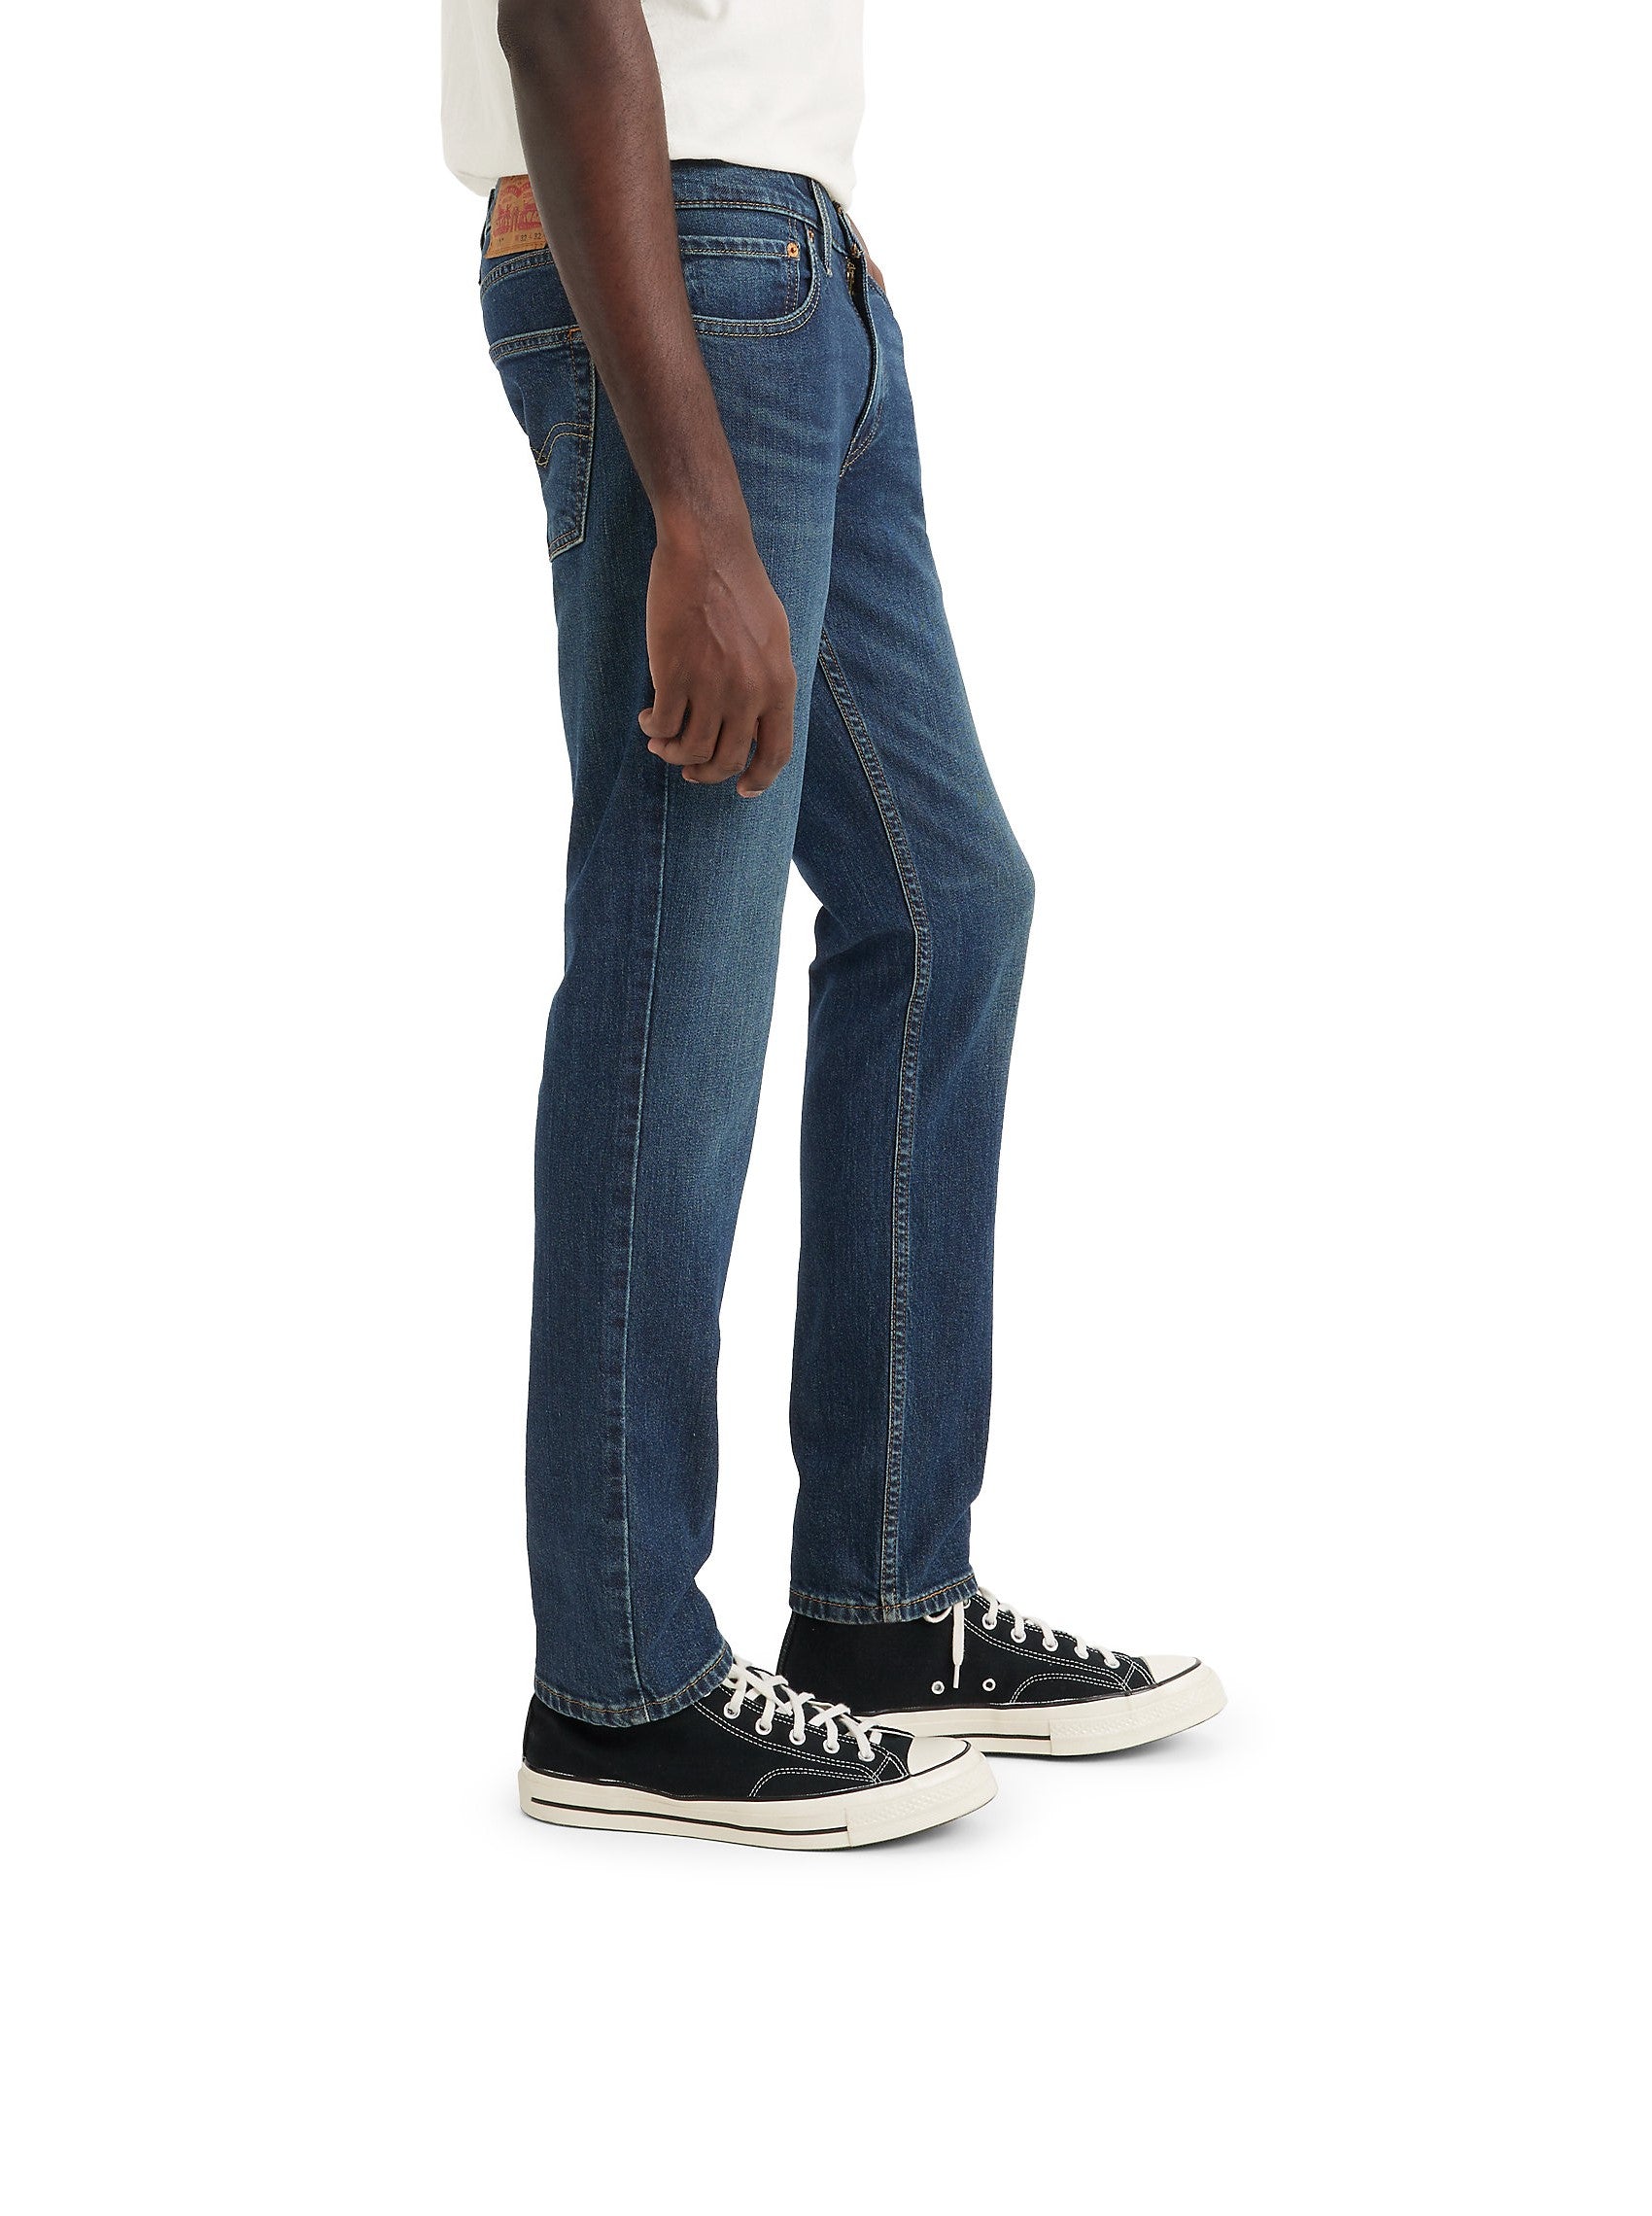 pantalones-jeans-levis-511-slim-figure-p-caballer